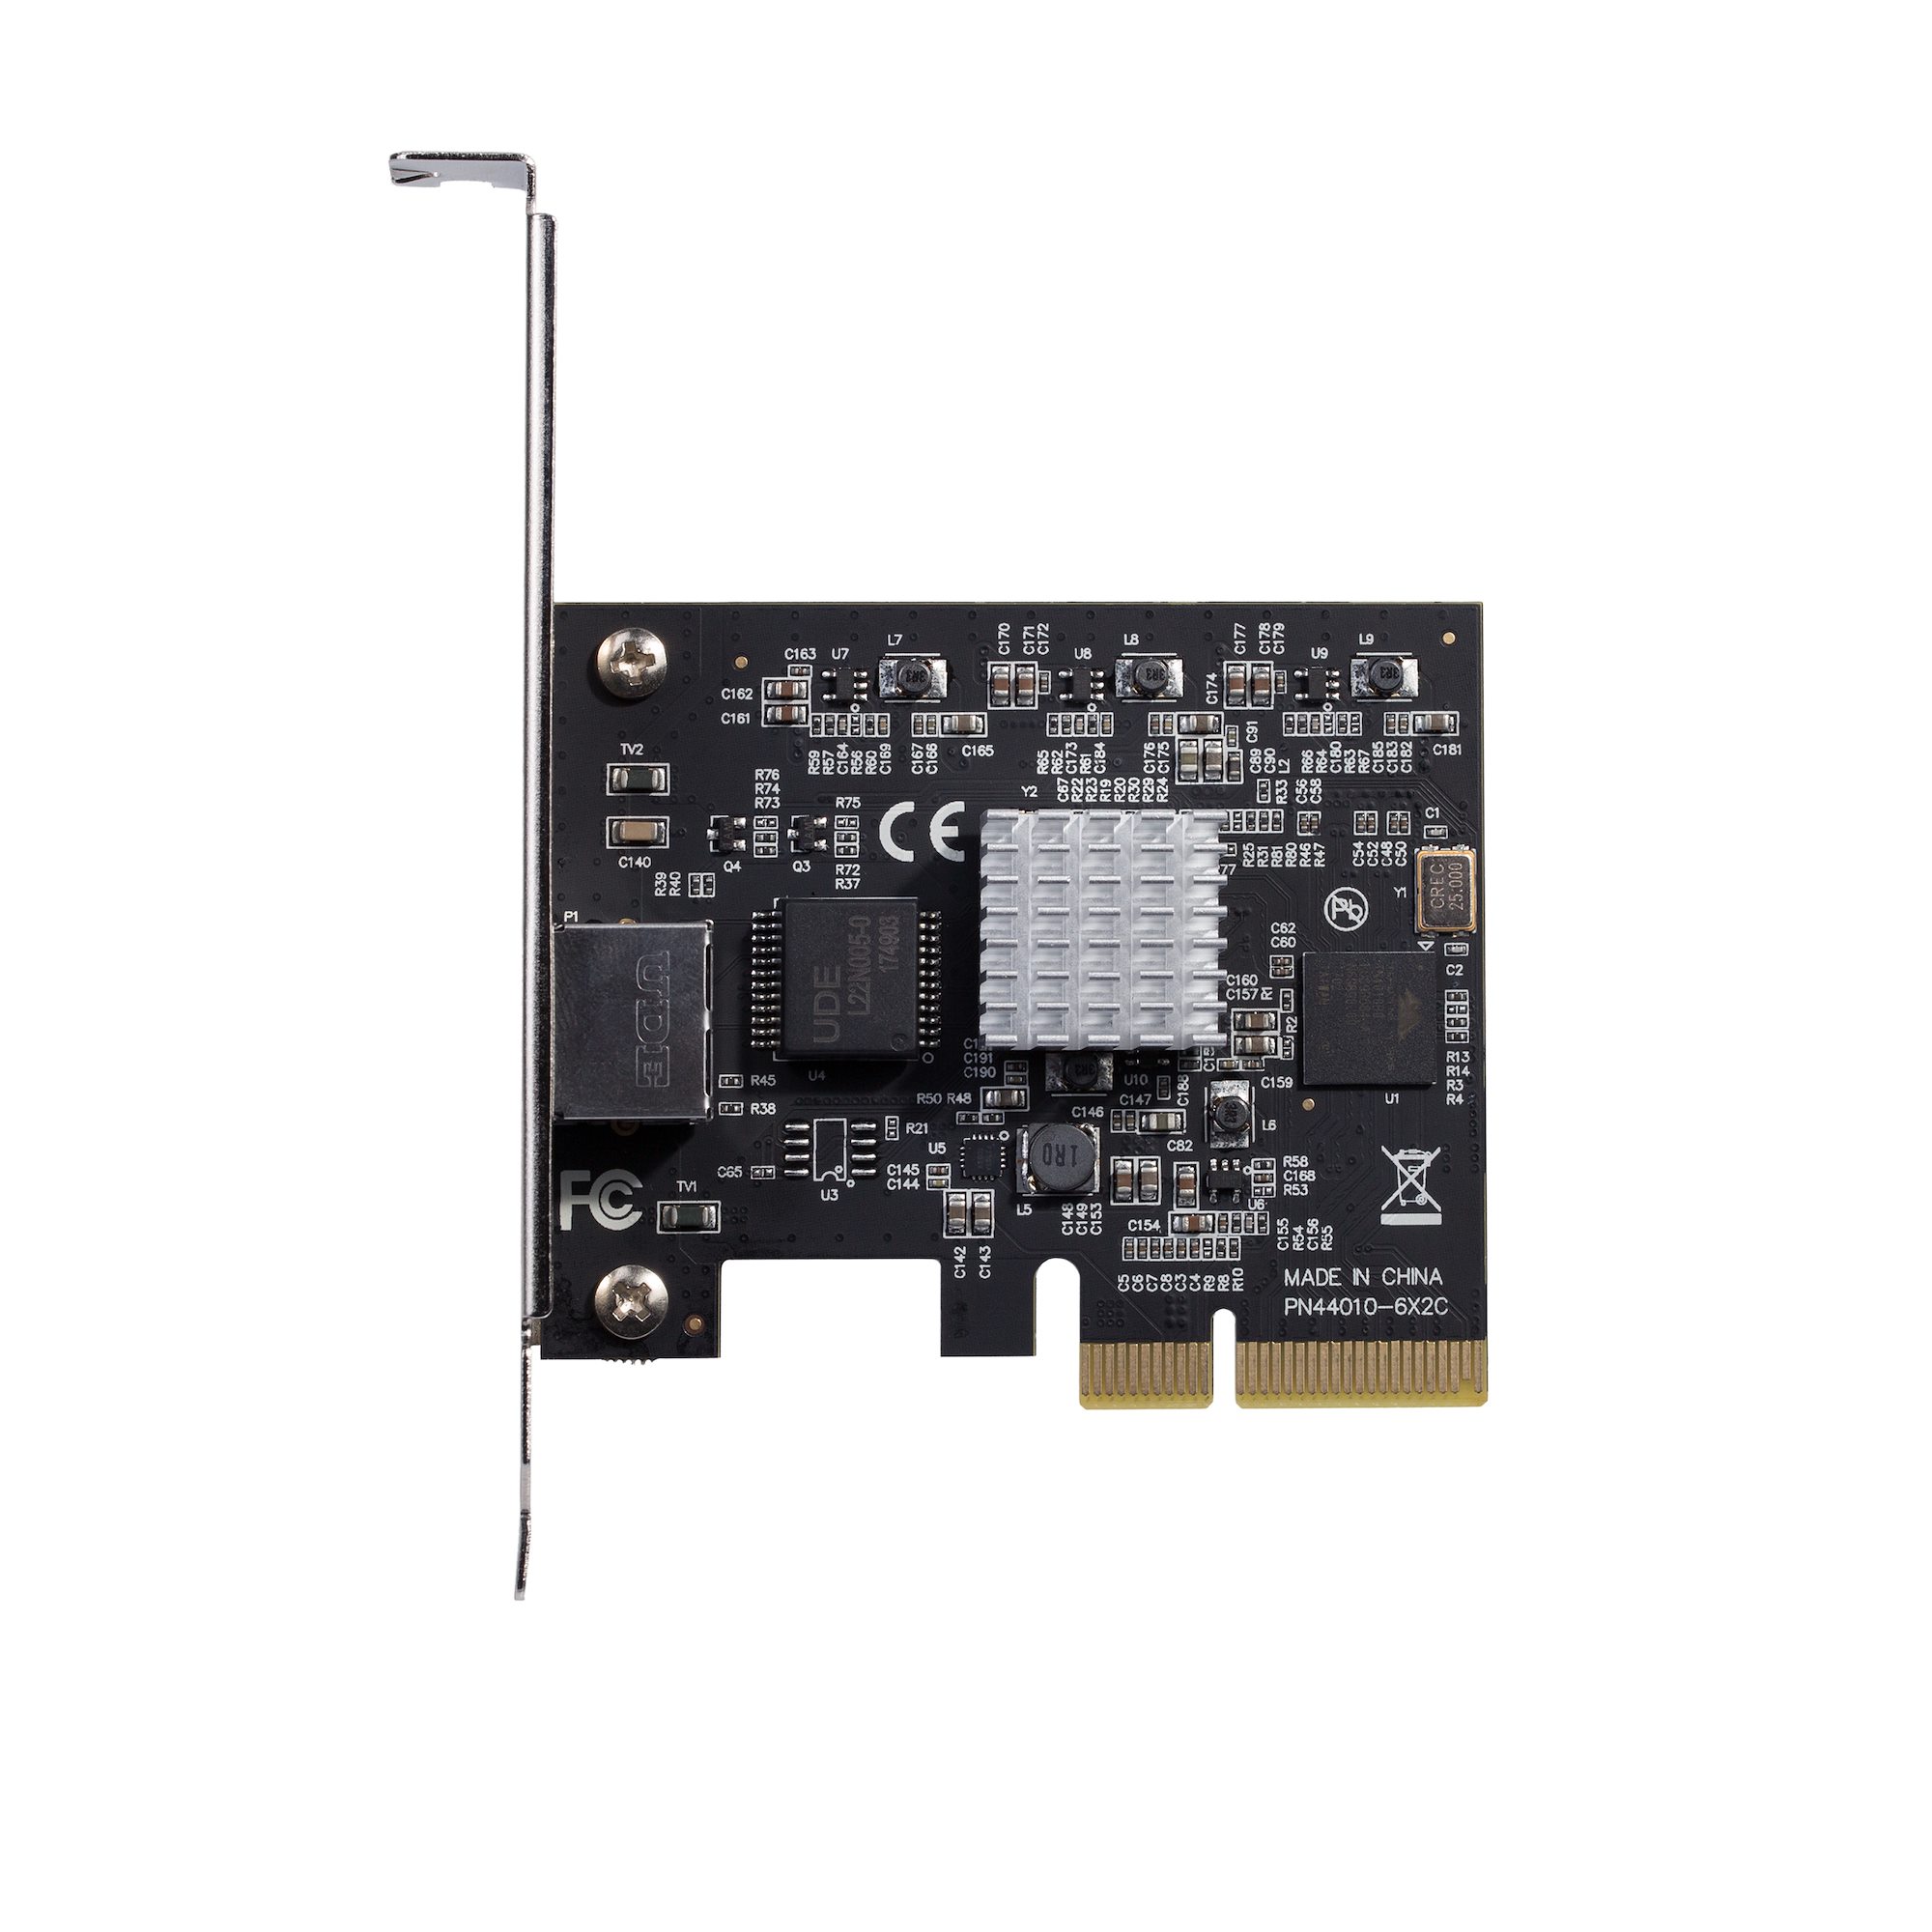 5スピード対応PCIe LANカード 10GBase-T / NBASE-T - ネットワークアダプタ カード | StarTech.com 日本